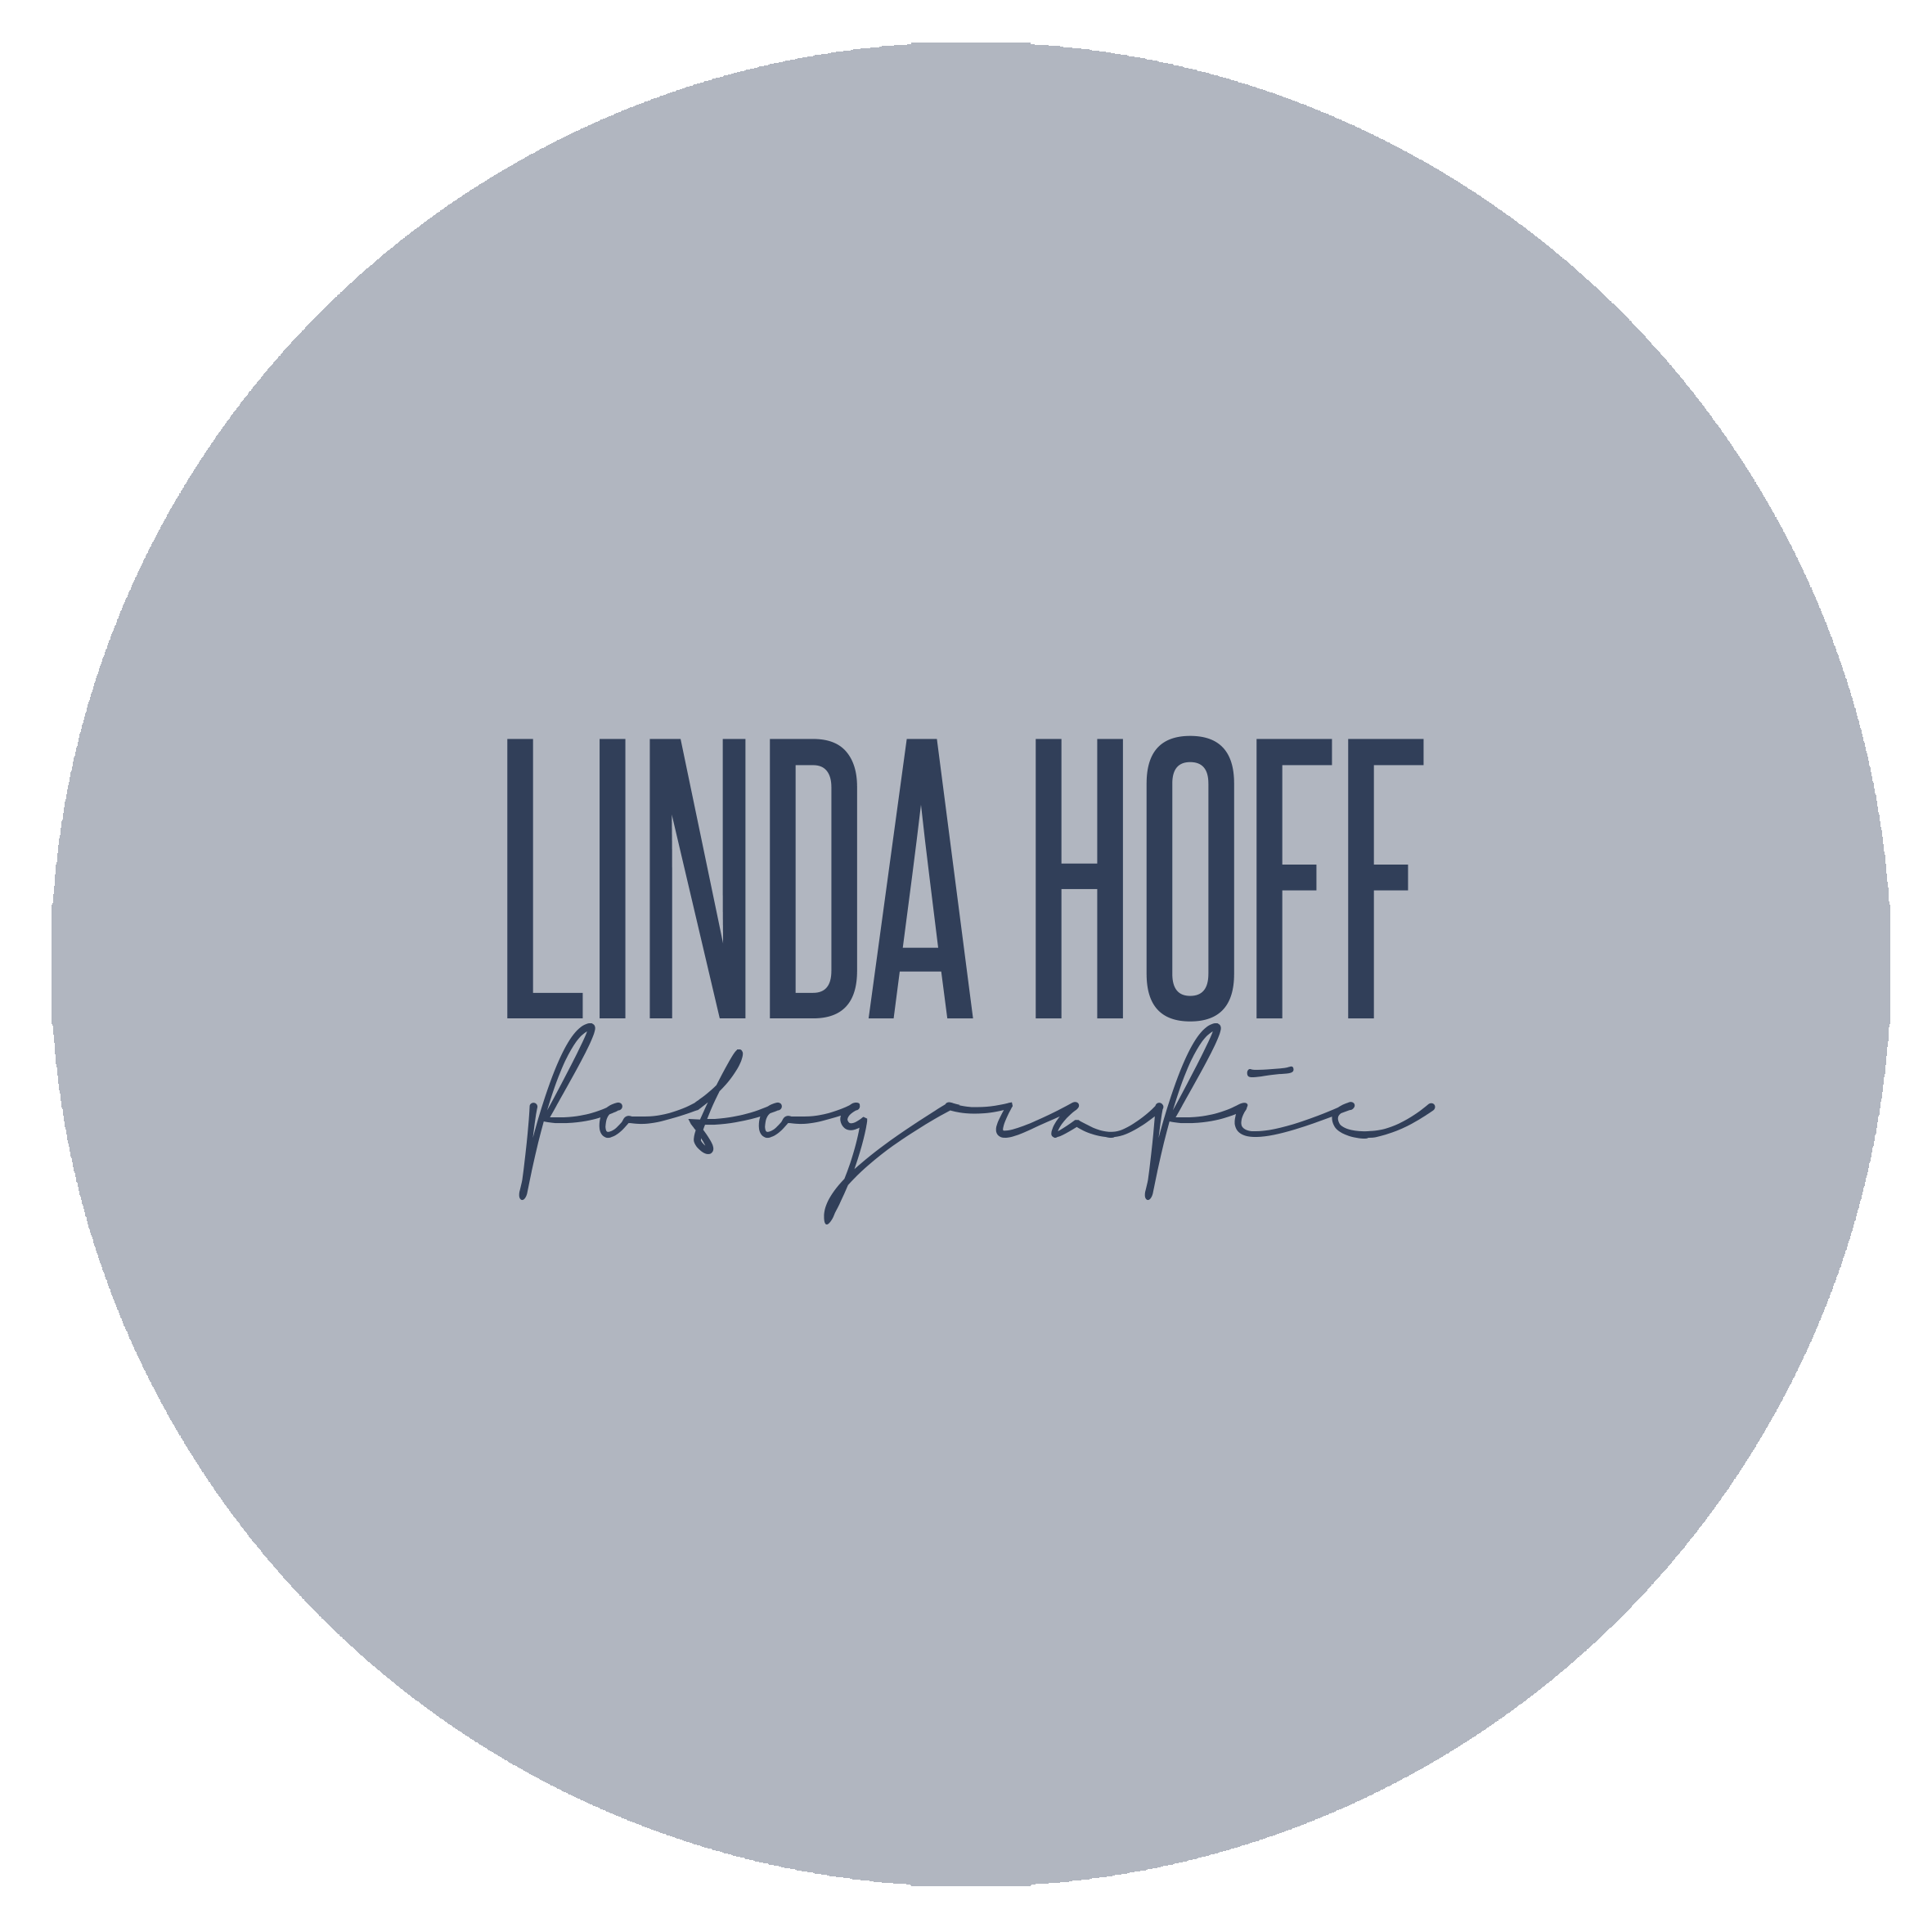 Linda Hoff